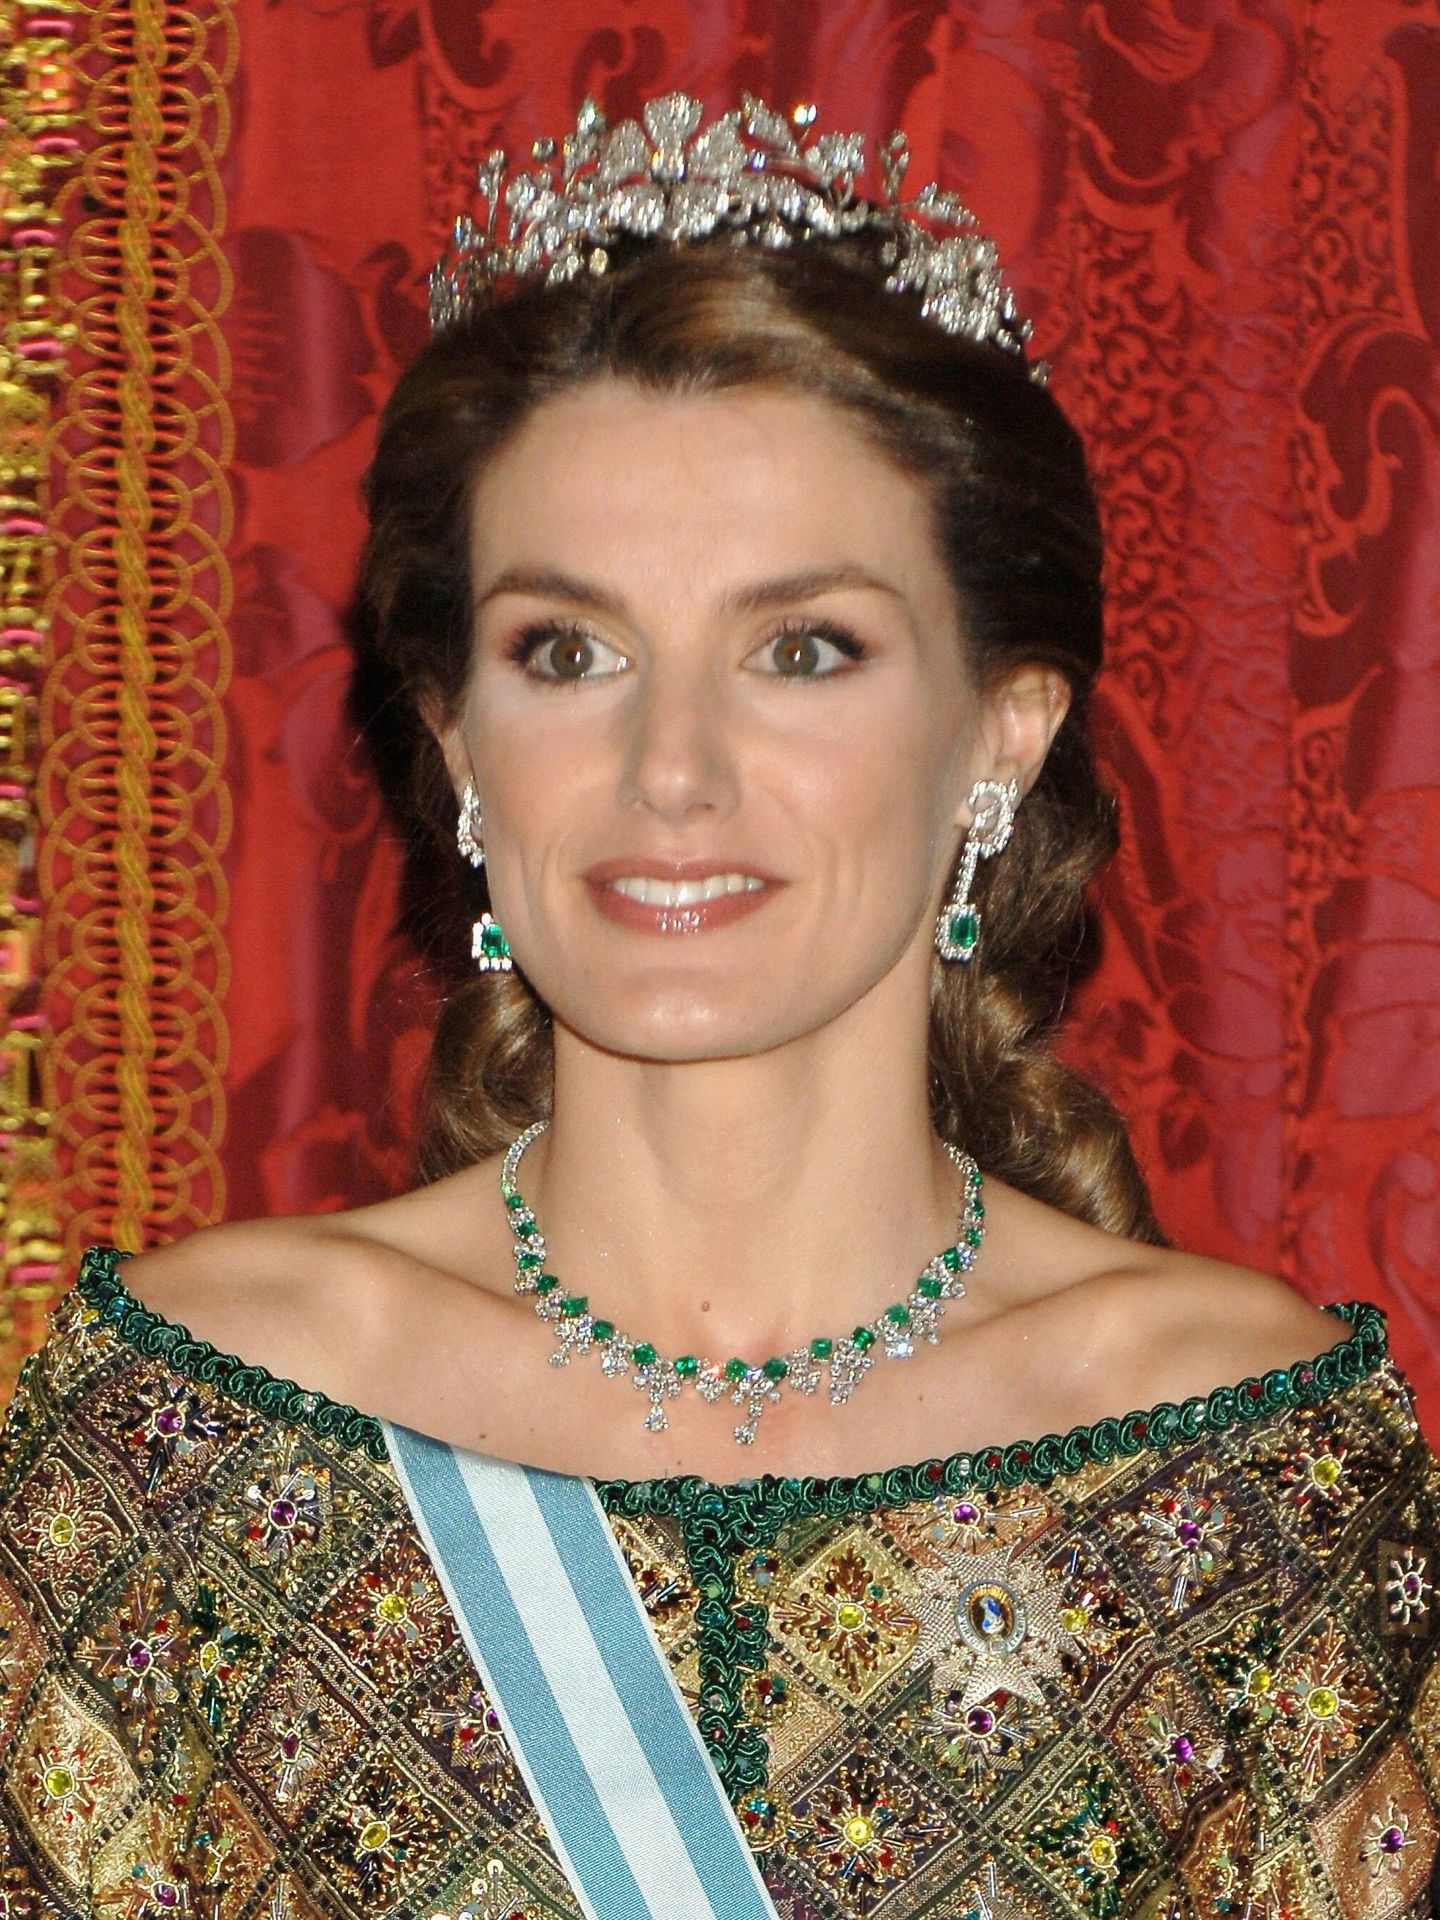  La reina Letizia, con la tiara floral y los pendientes y collar de esmeraldas. (Getty)